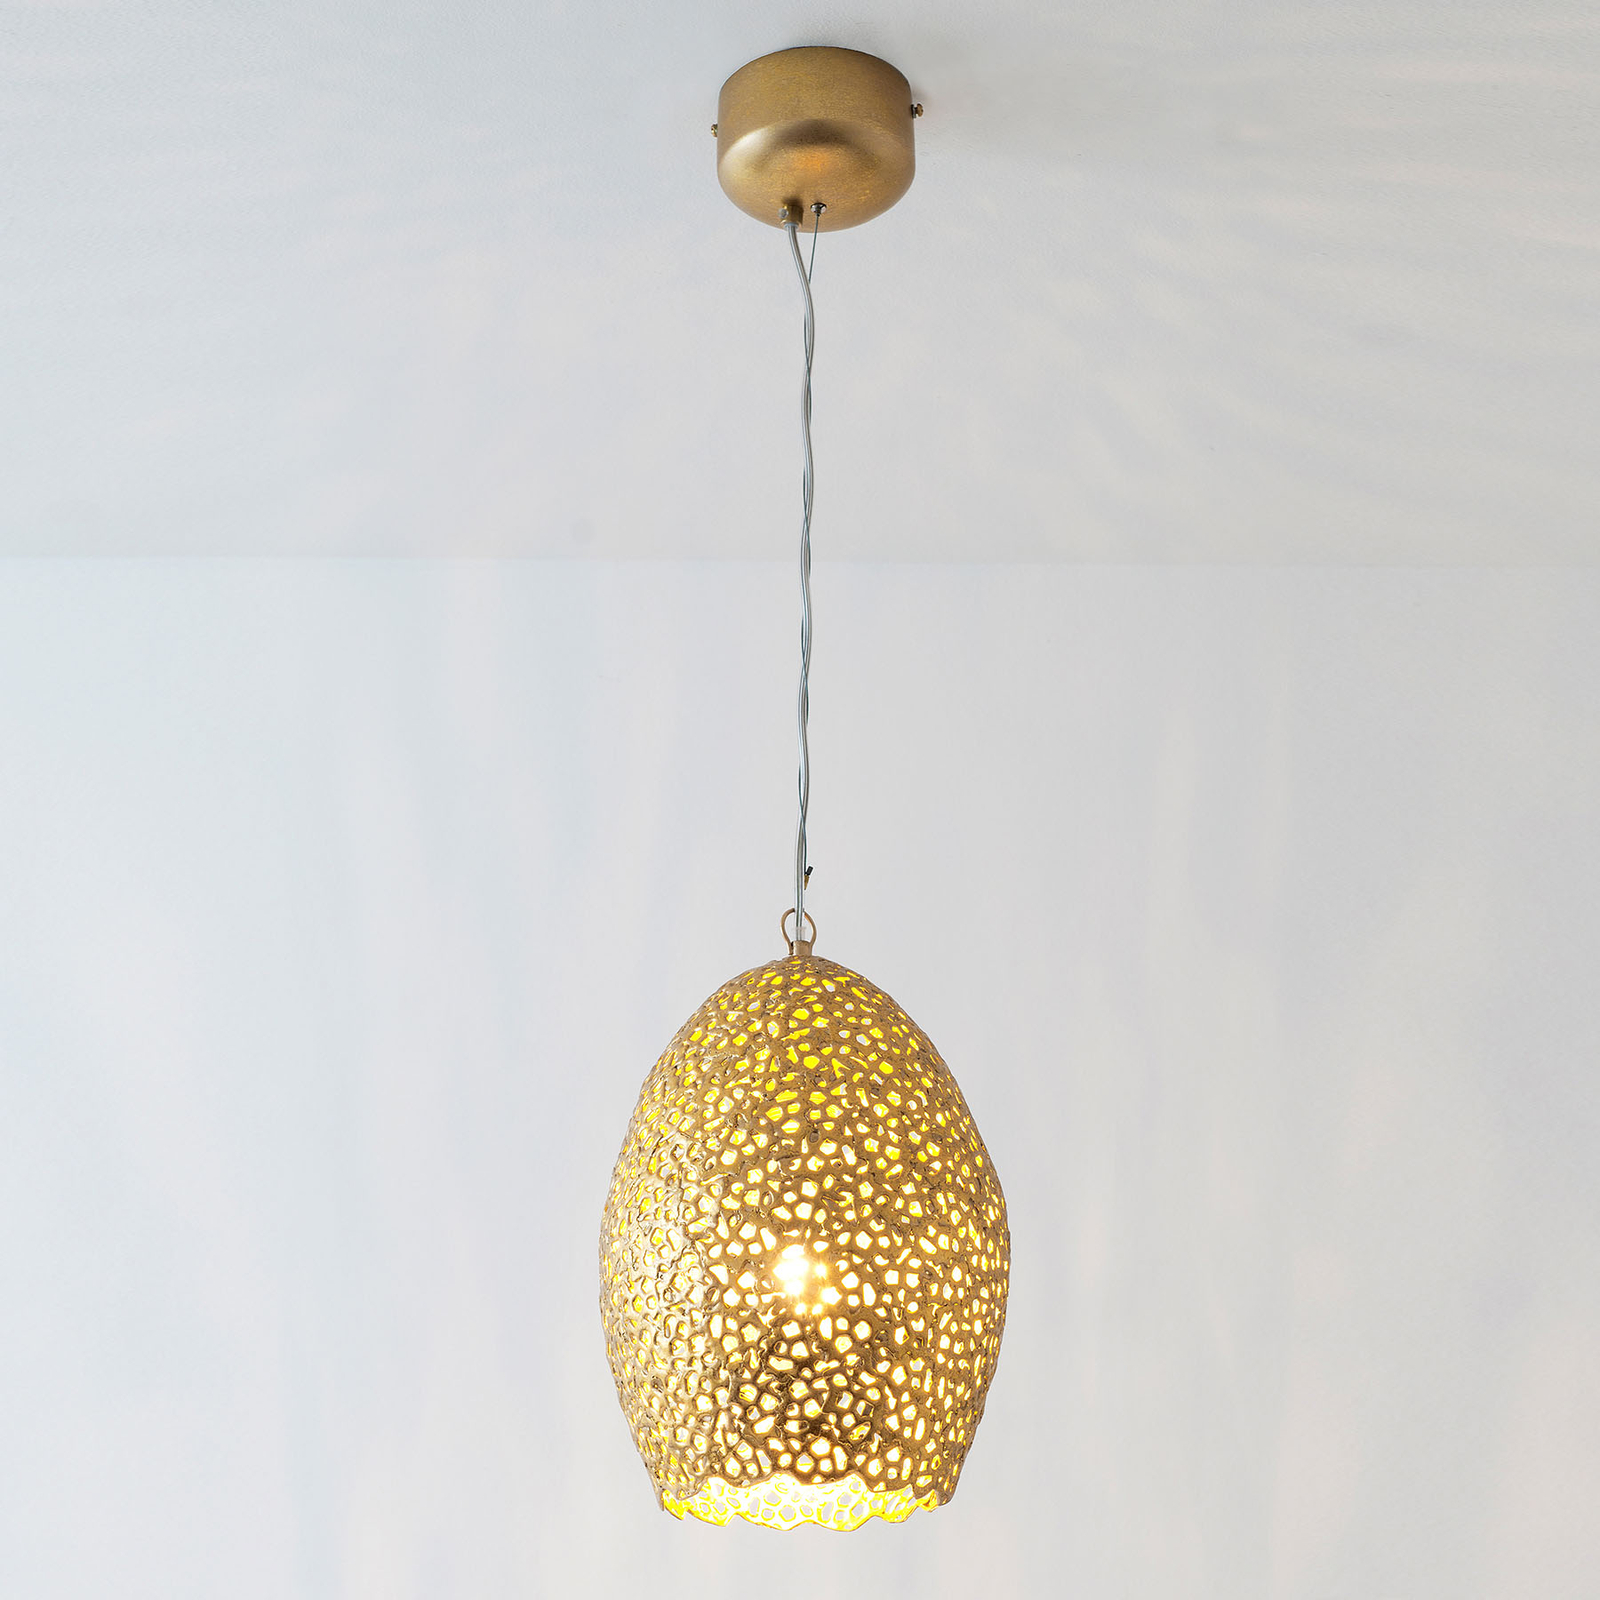 Lampa wisząca Cavalliere, złota, Ø 22 cm